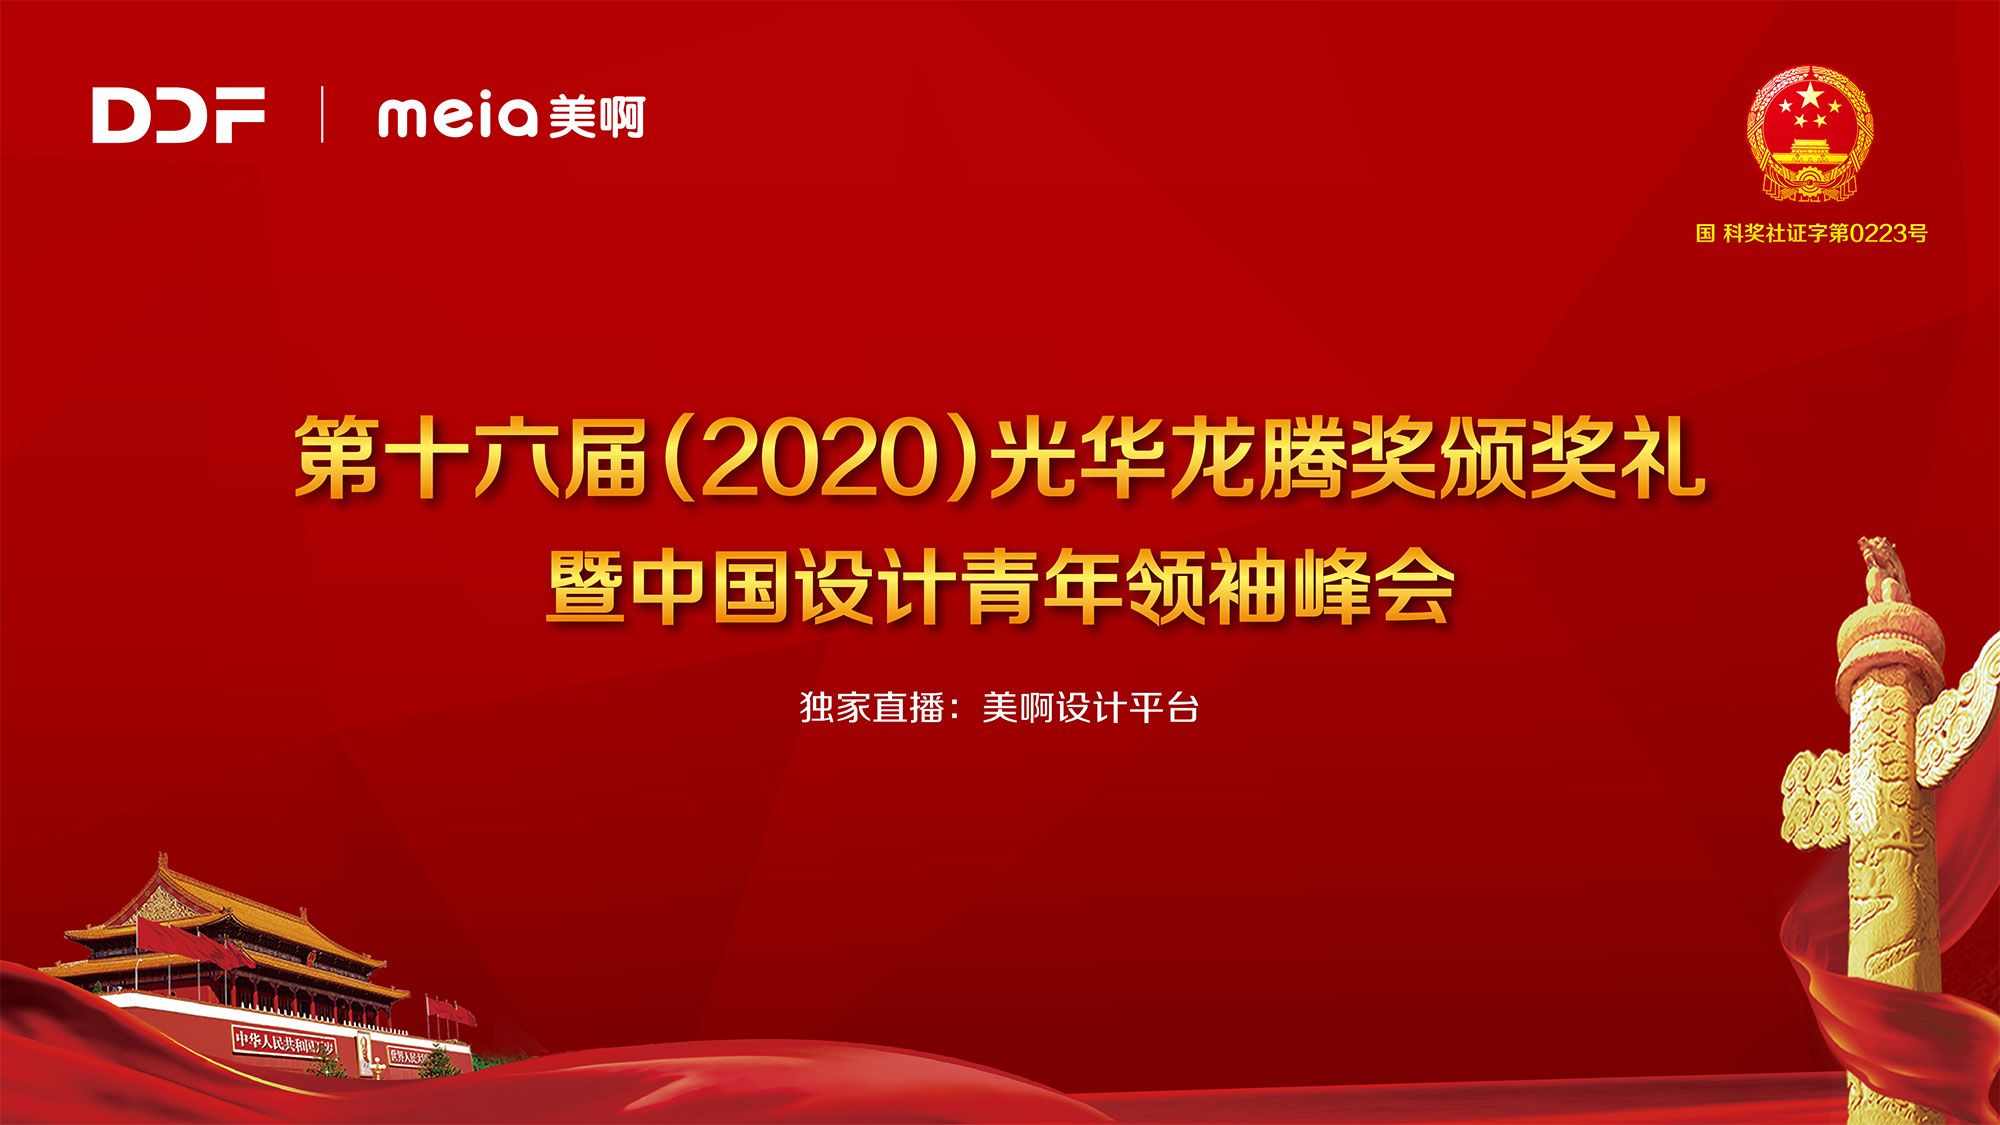 2020光华龙腾奖颁奖礼暨中国设计青年领袖峰会